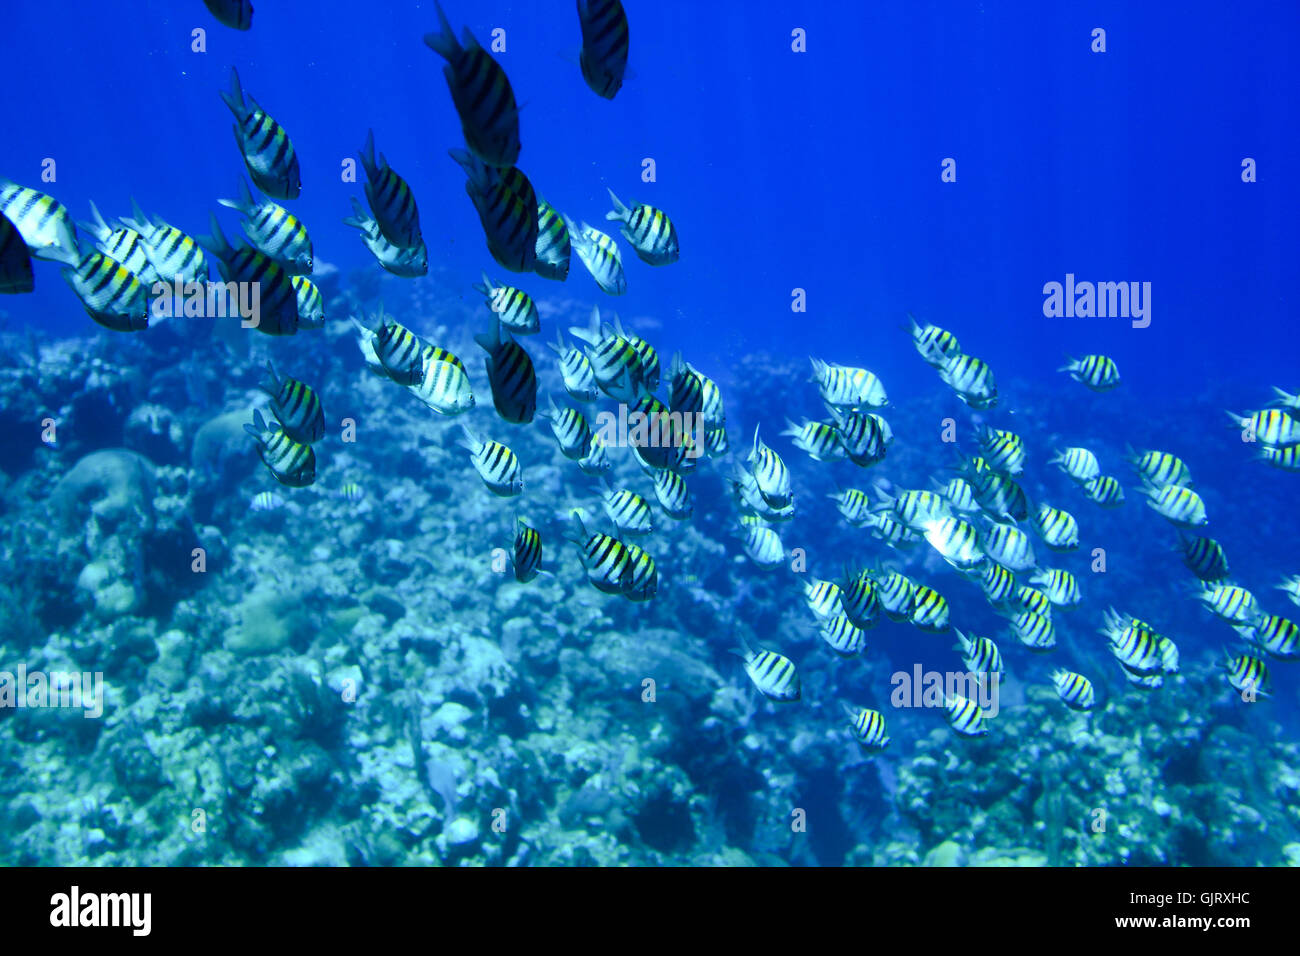 blue fish underwater Stock Photo